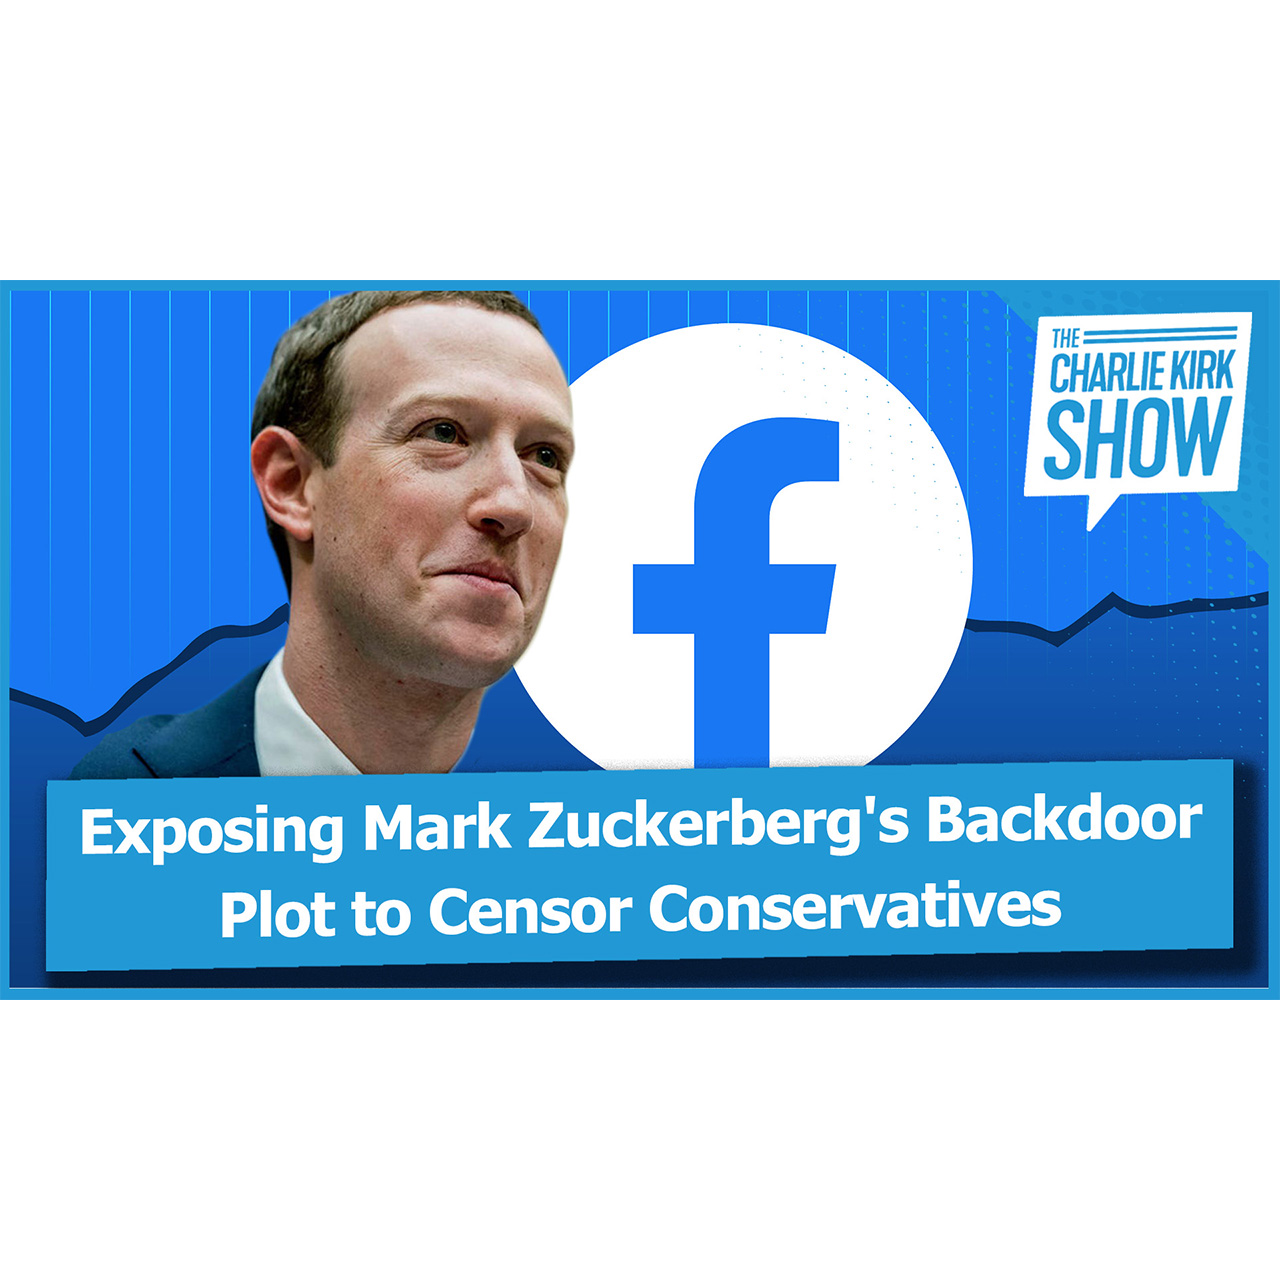 Exposing Mark Zuckerberg's Backdoor Plot to Censor Conservatives